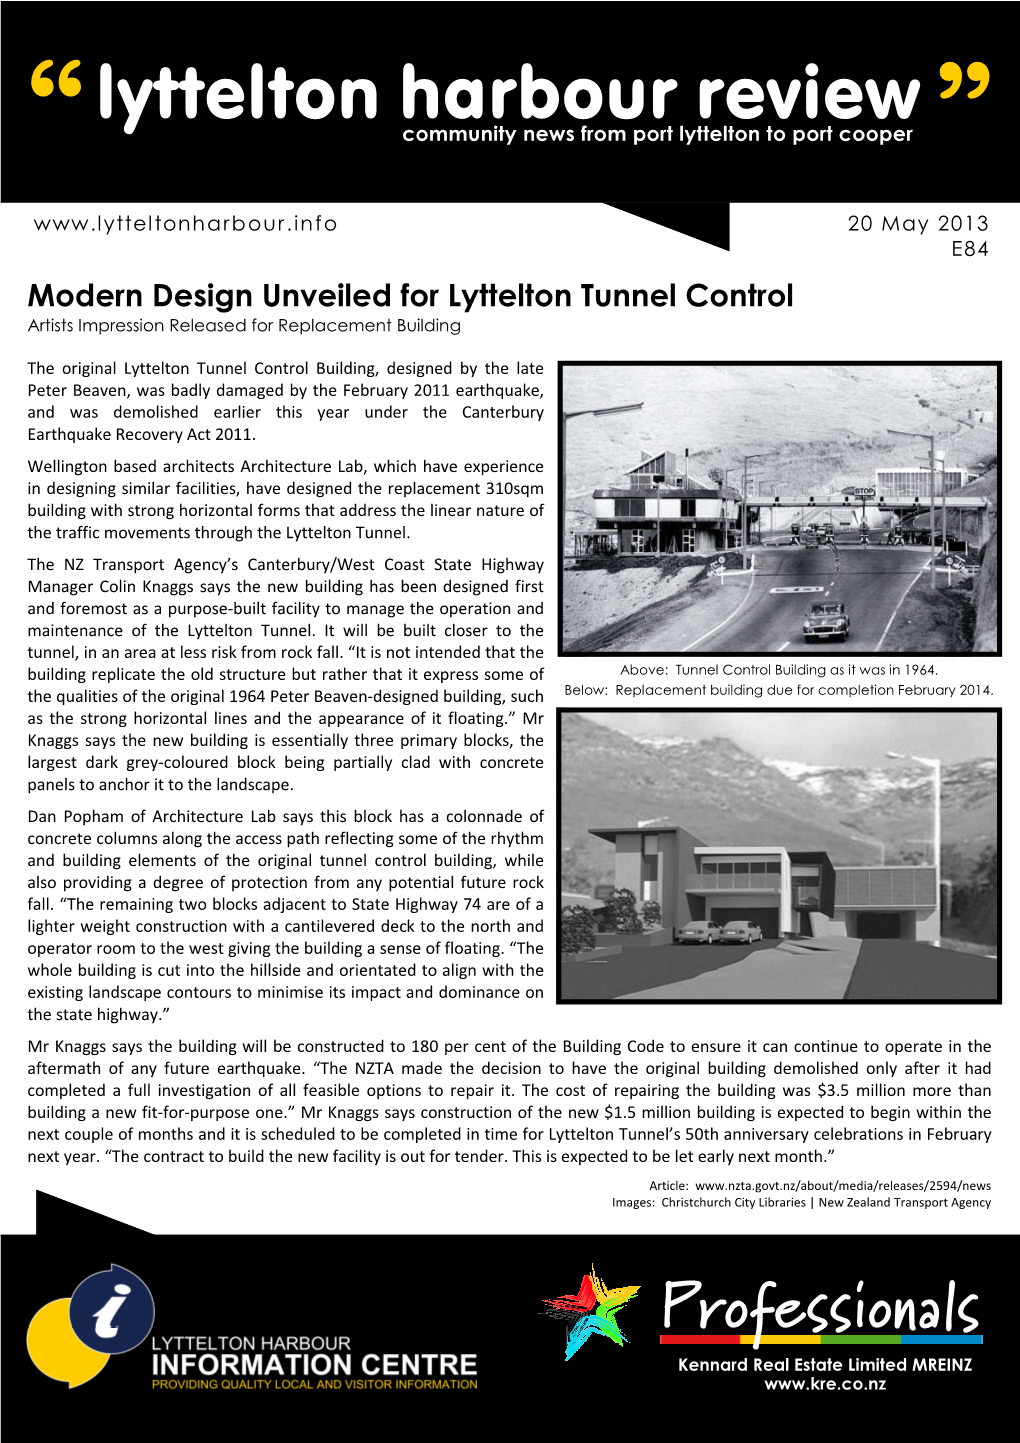 Lyttelton Harbour Review “ Community News from Port Lyttelton to Port Cooper